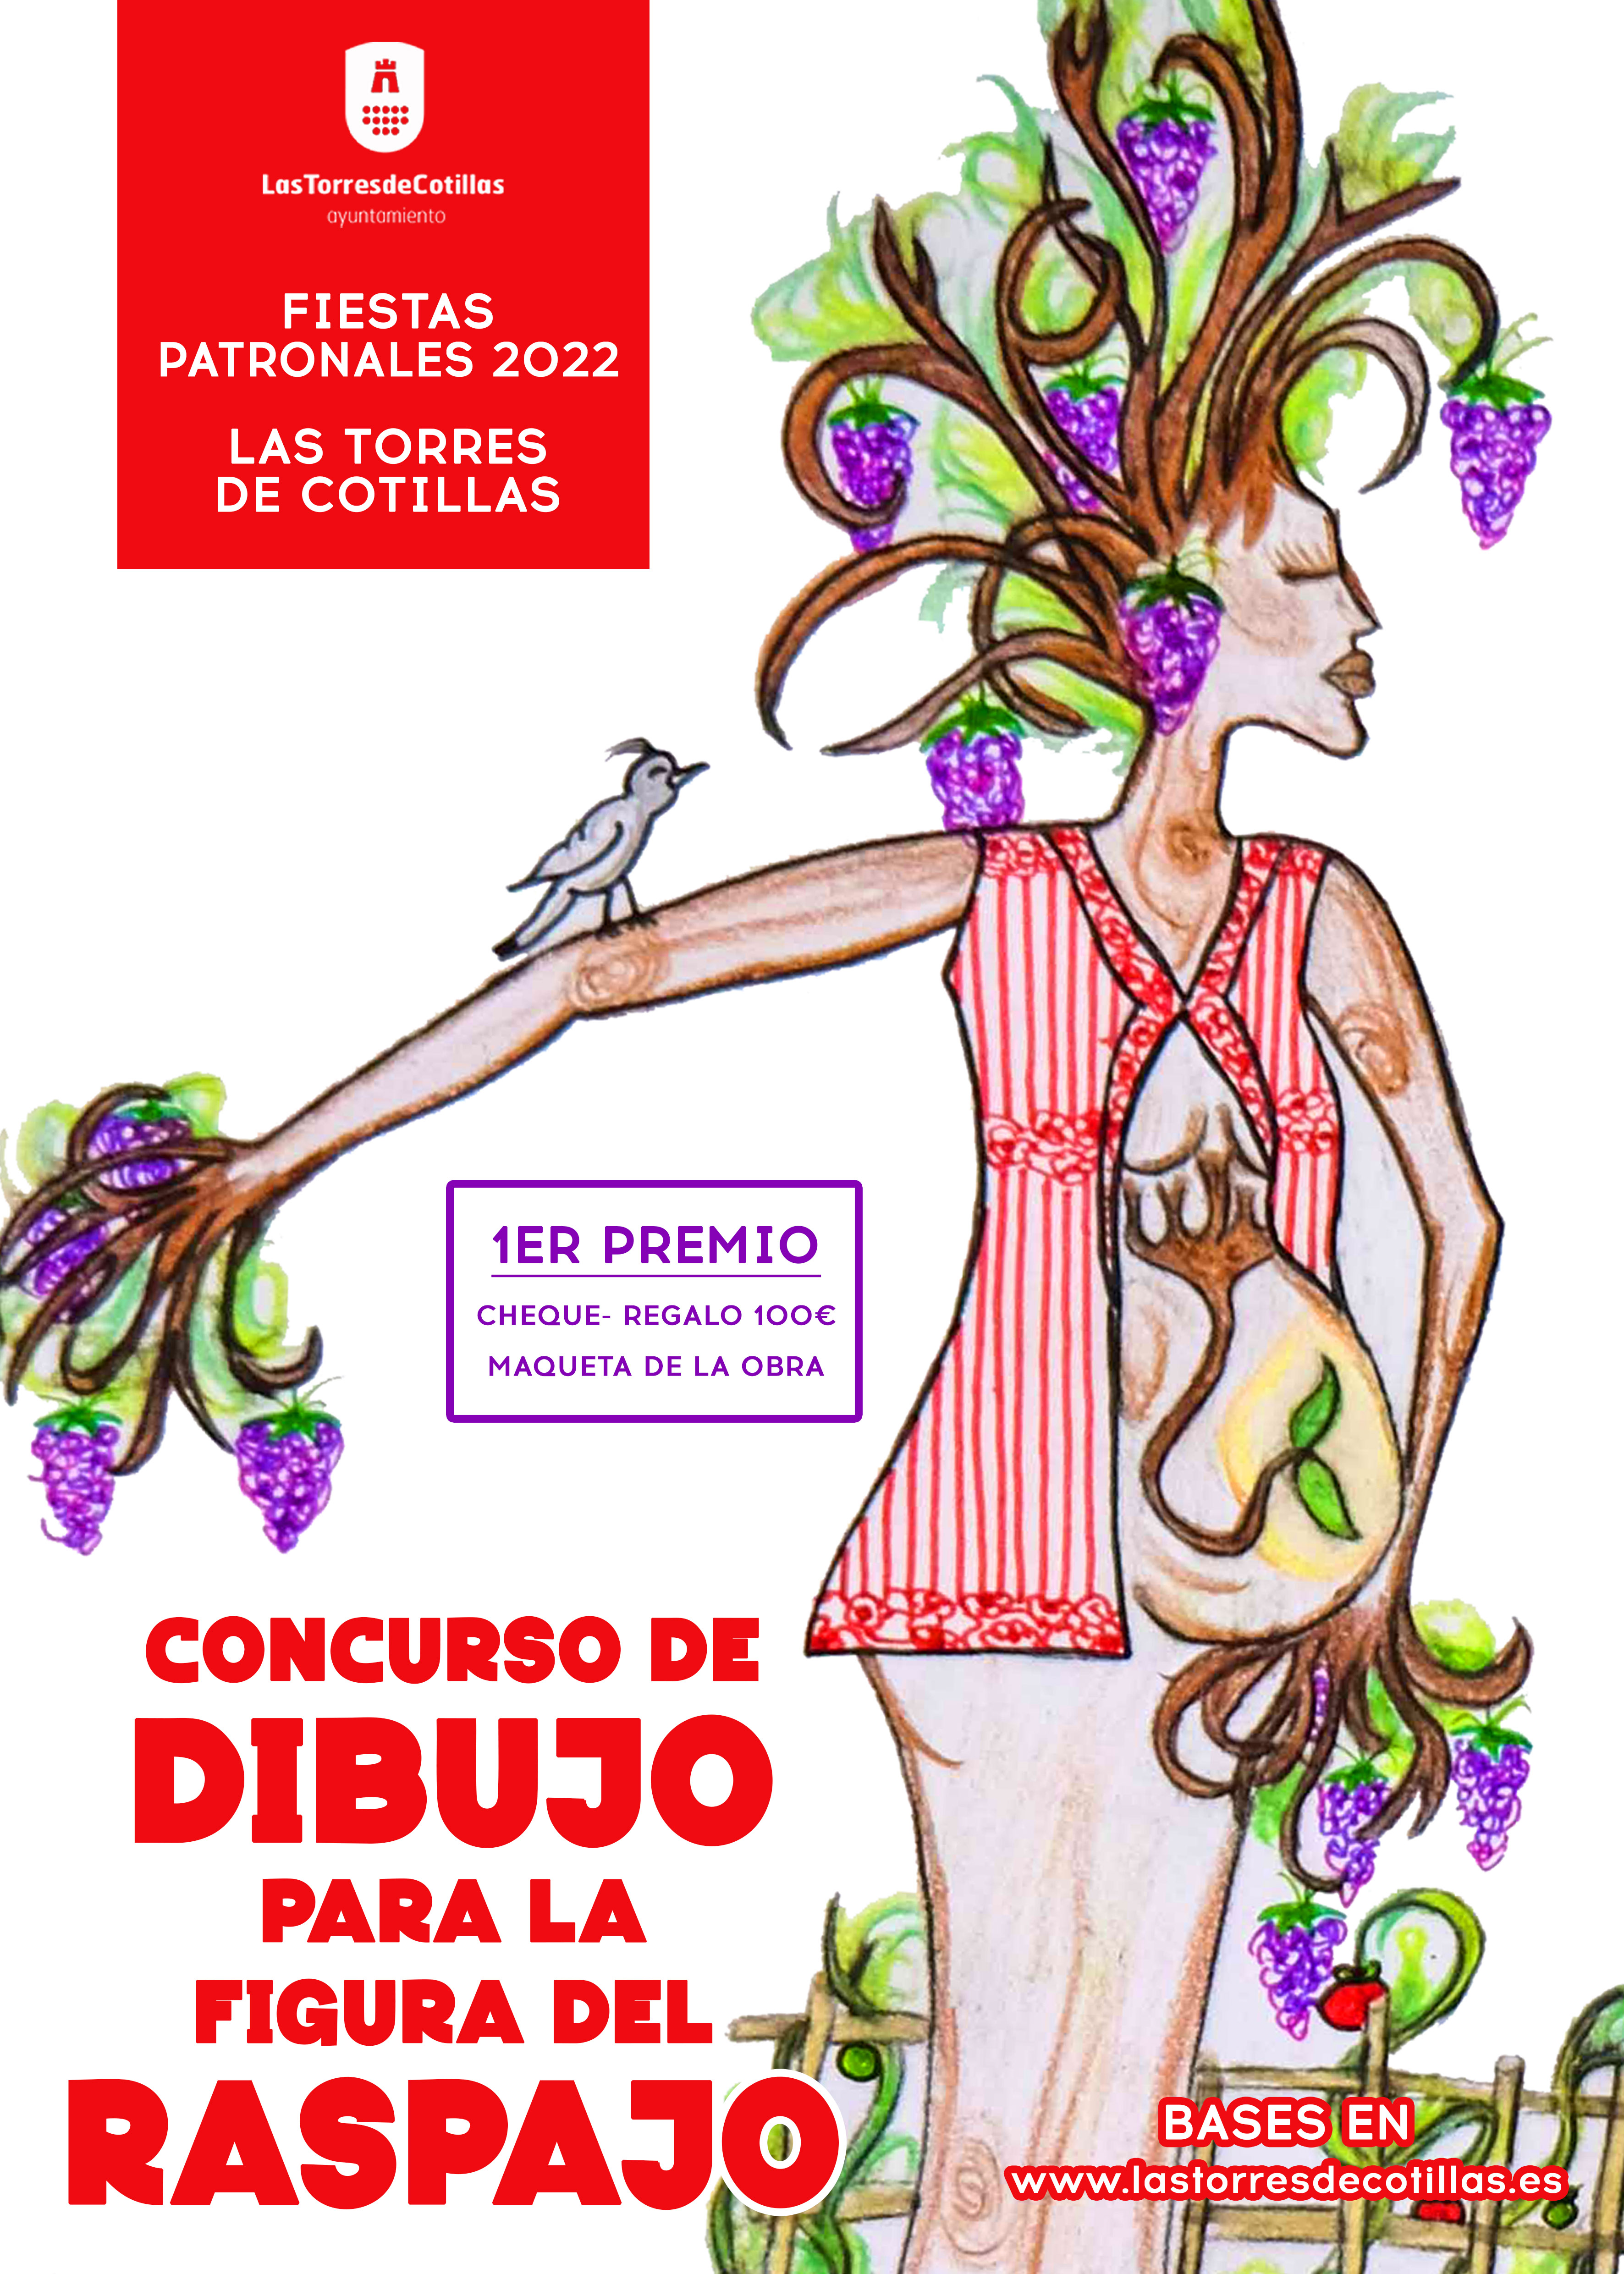 Concurso Dibujo Raspajo 2022 Las Torres de Cotillas